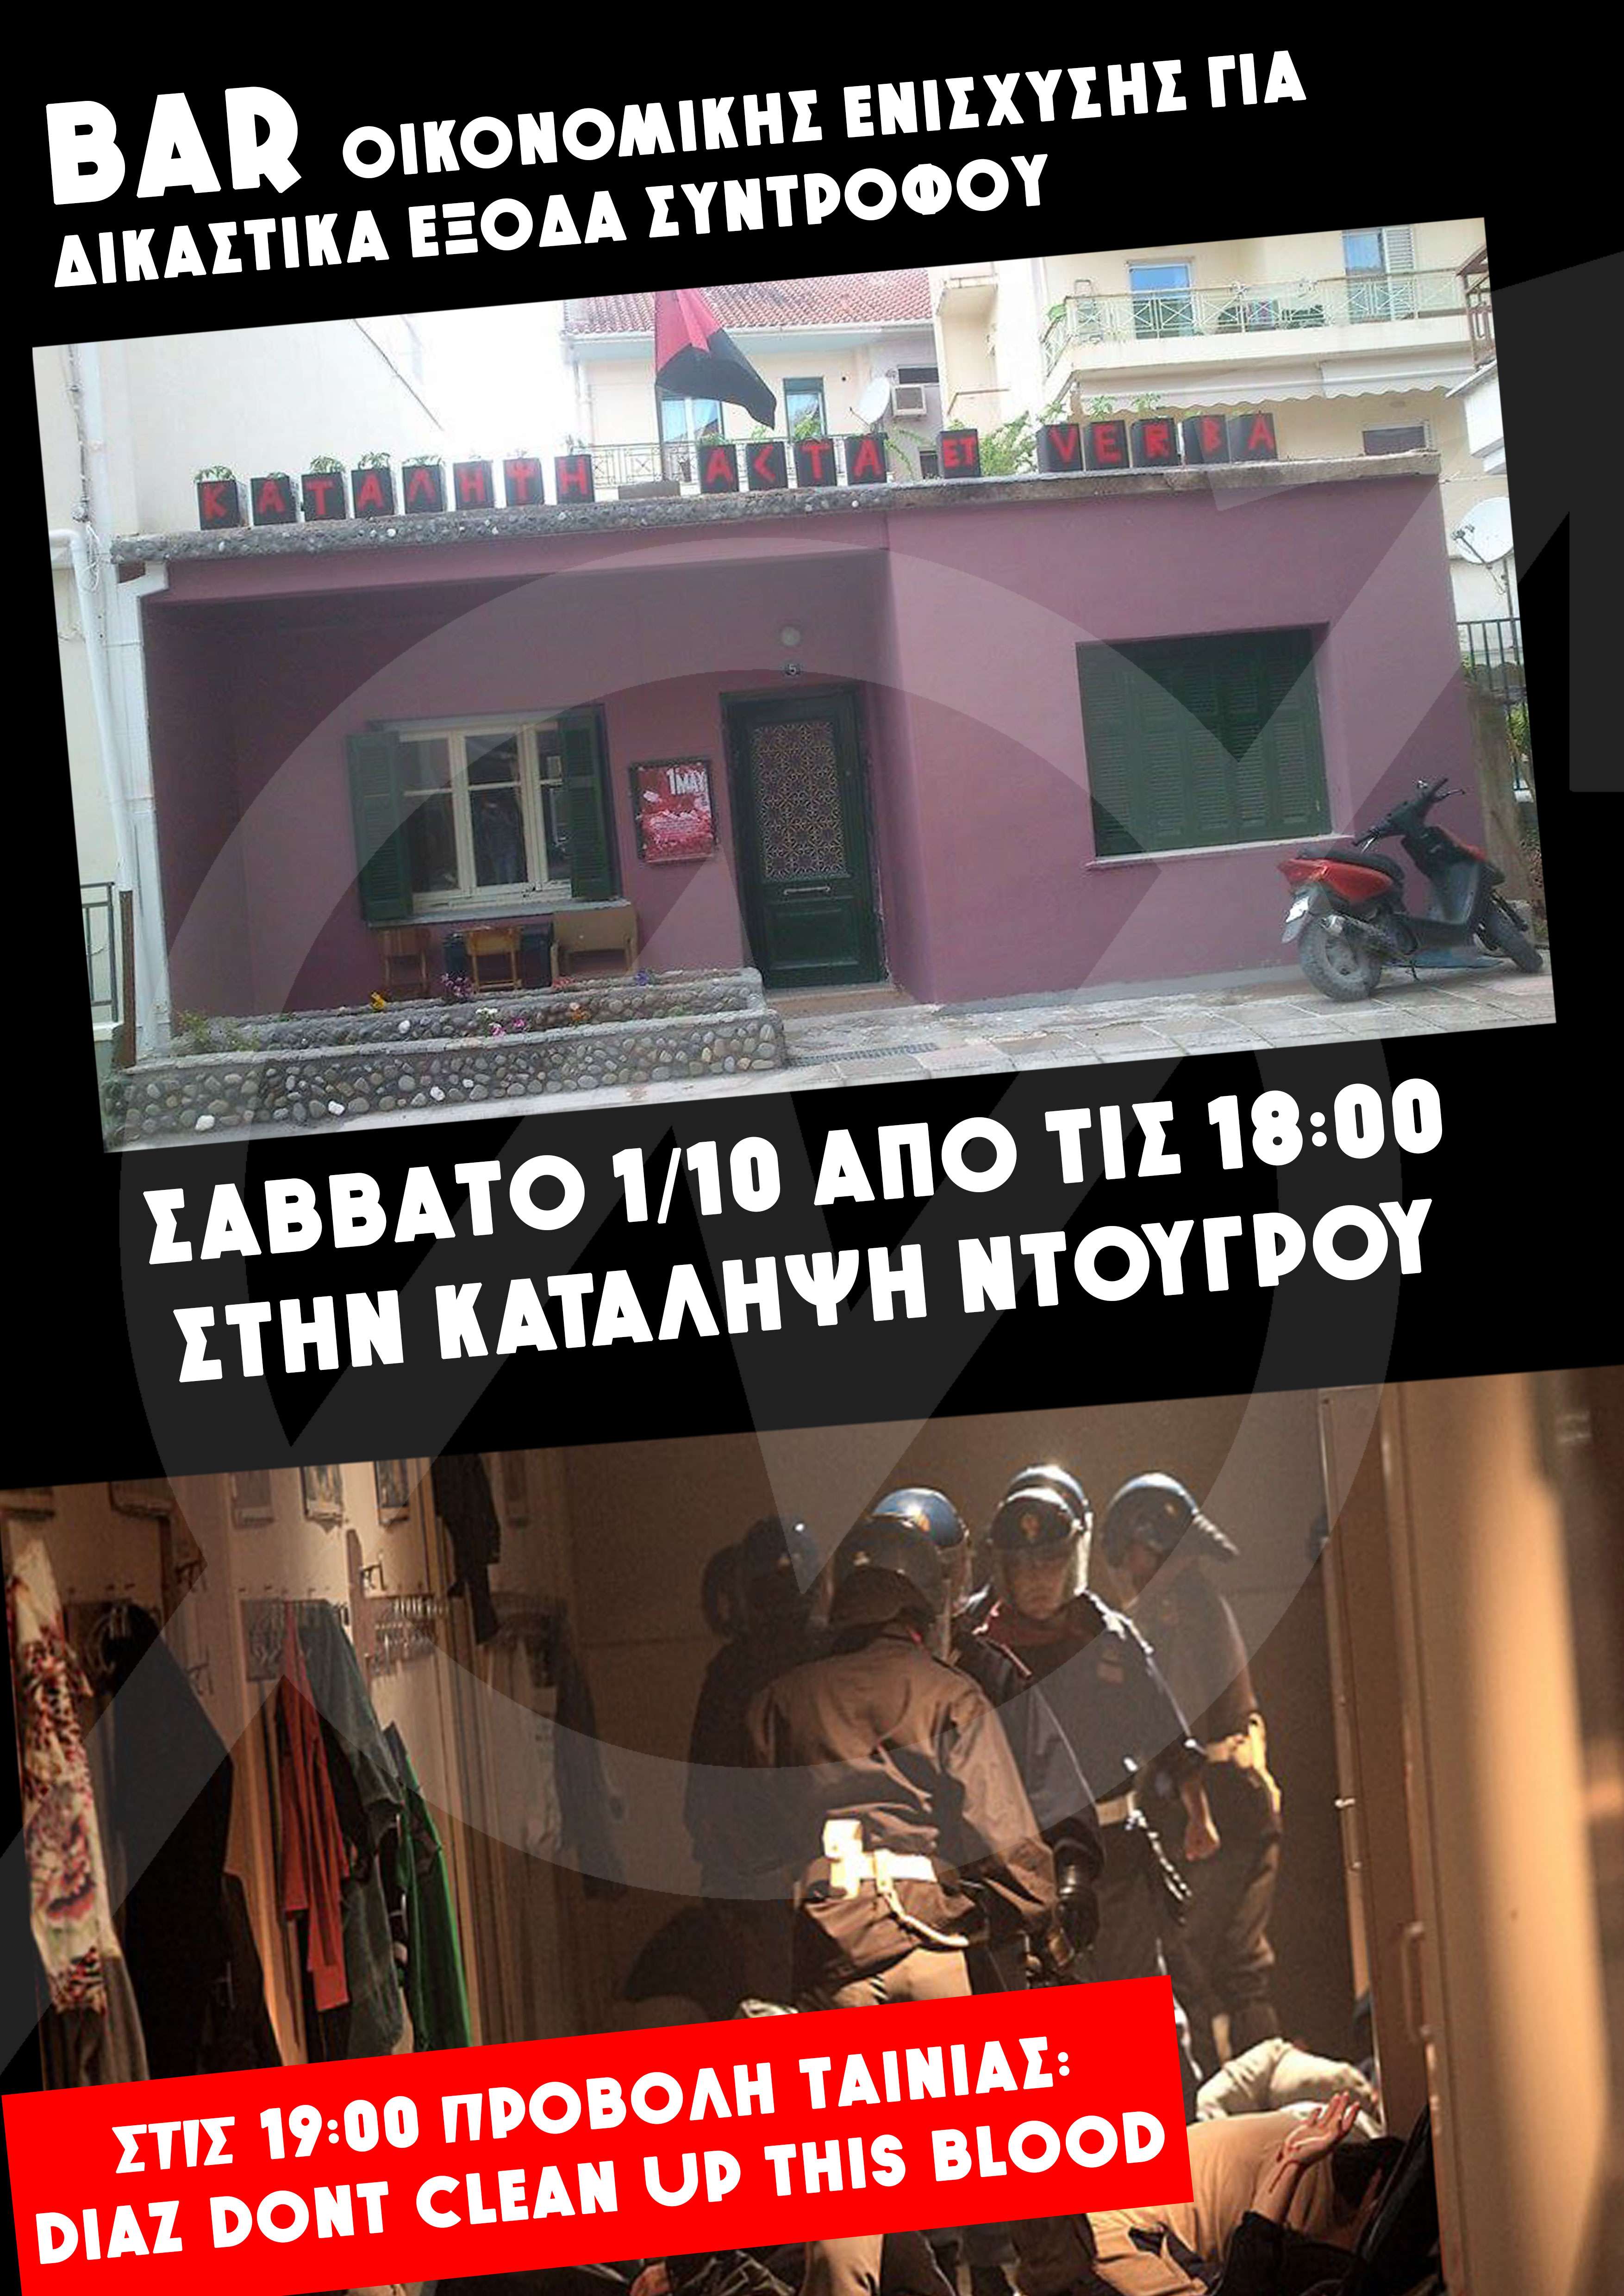 Λάρισα: Bar οικονομικής ενίσχυσης και προβολή ταινίας [Σάββατο 01/10, 18:00]